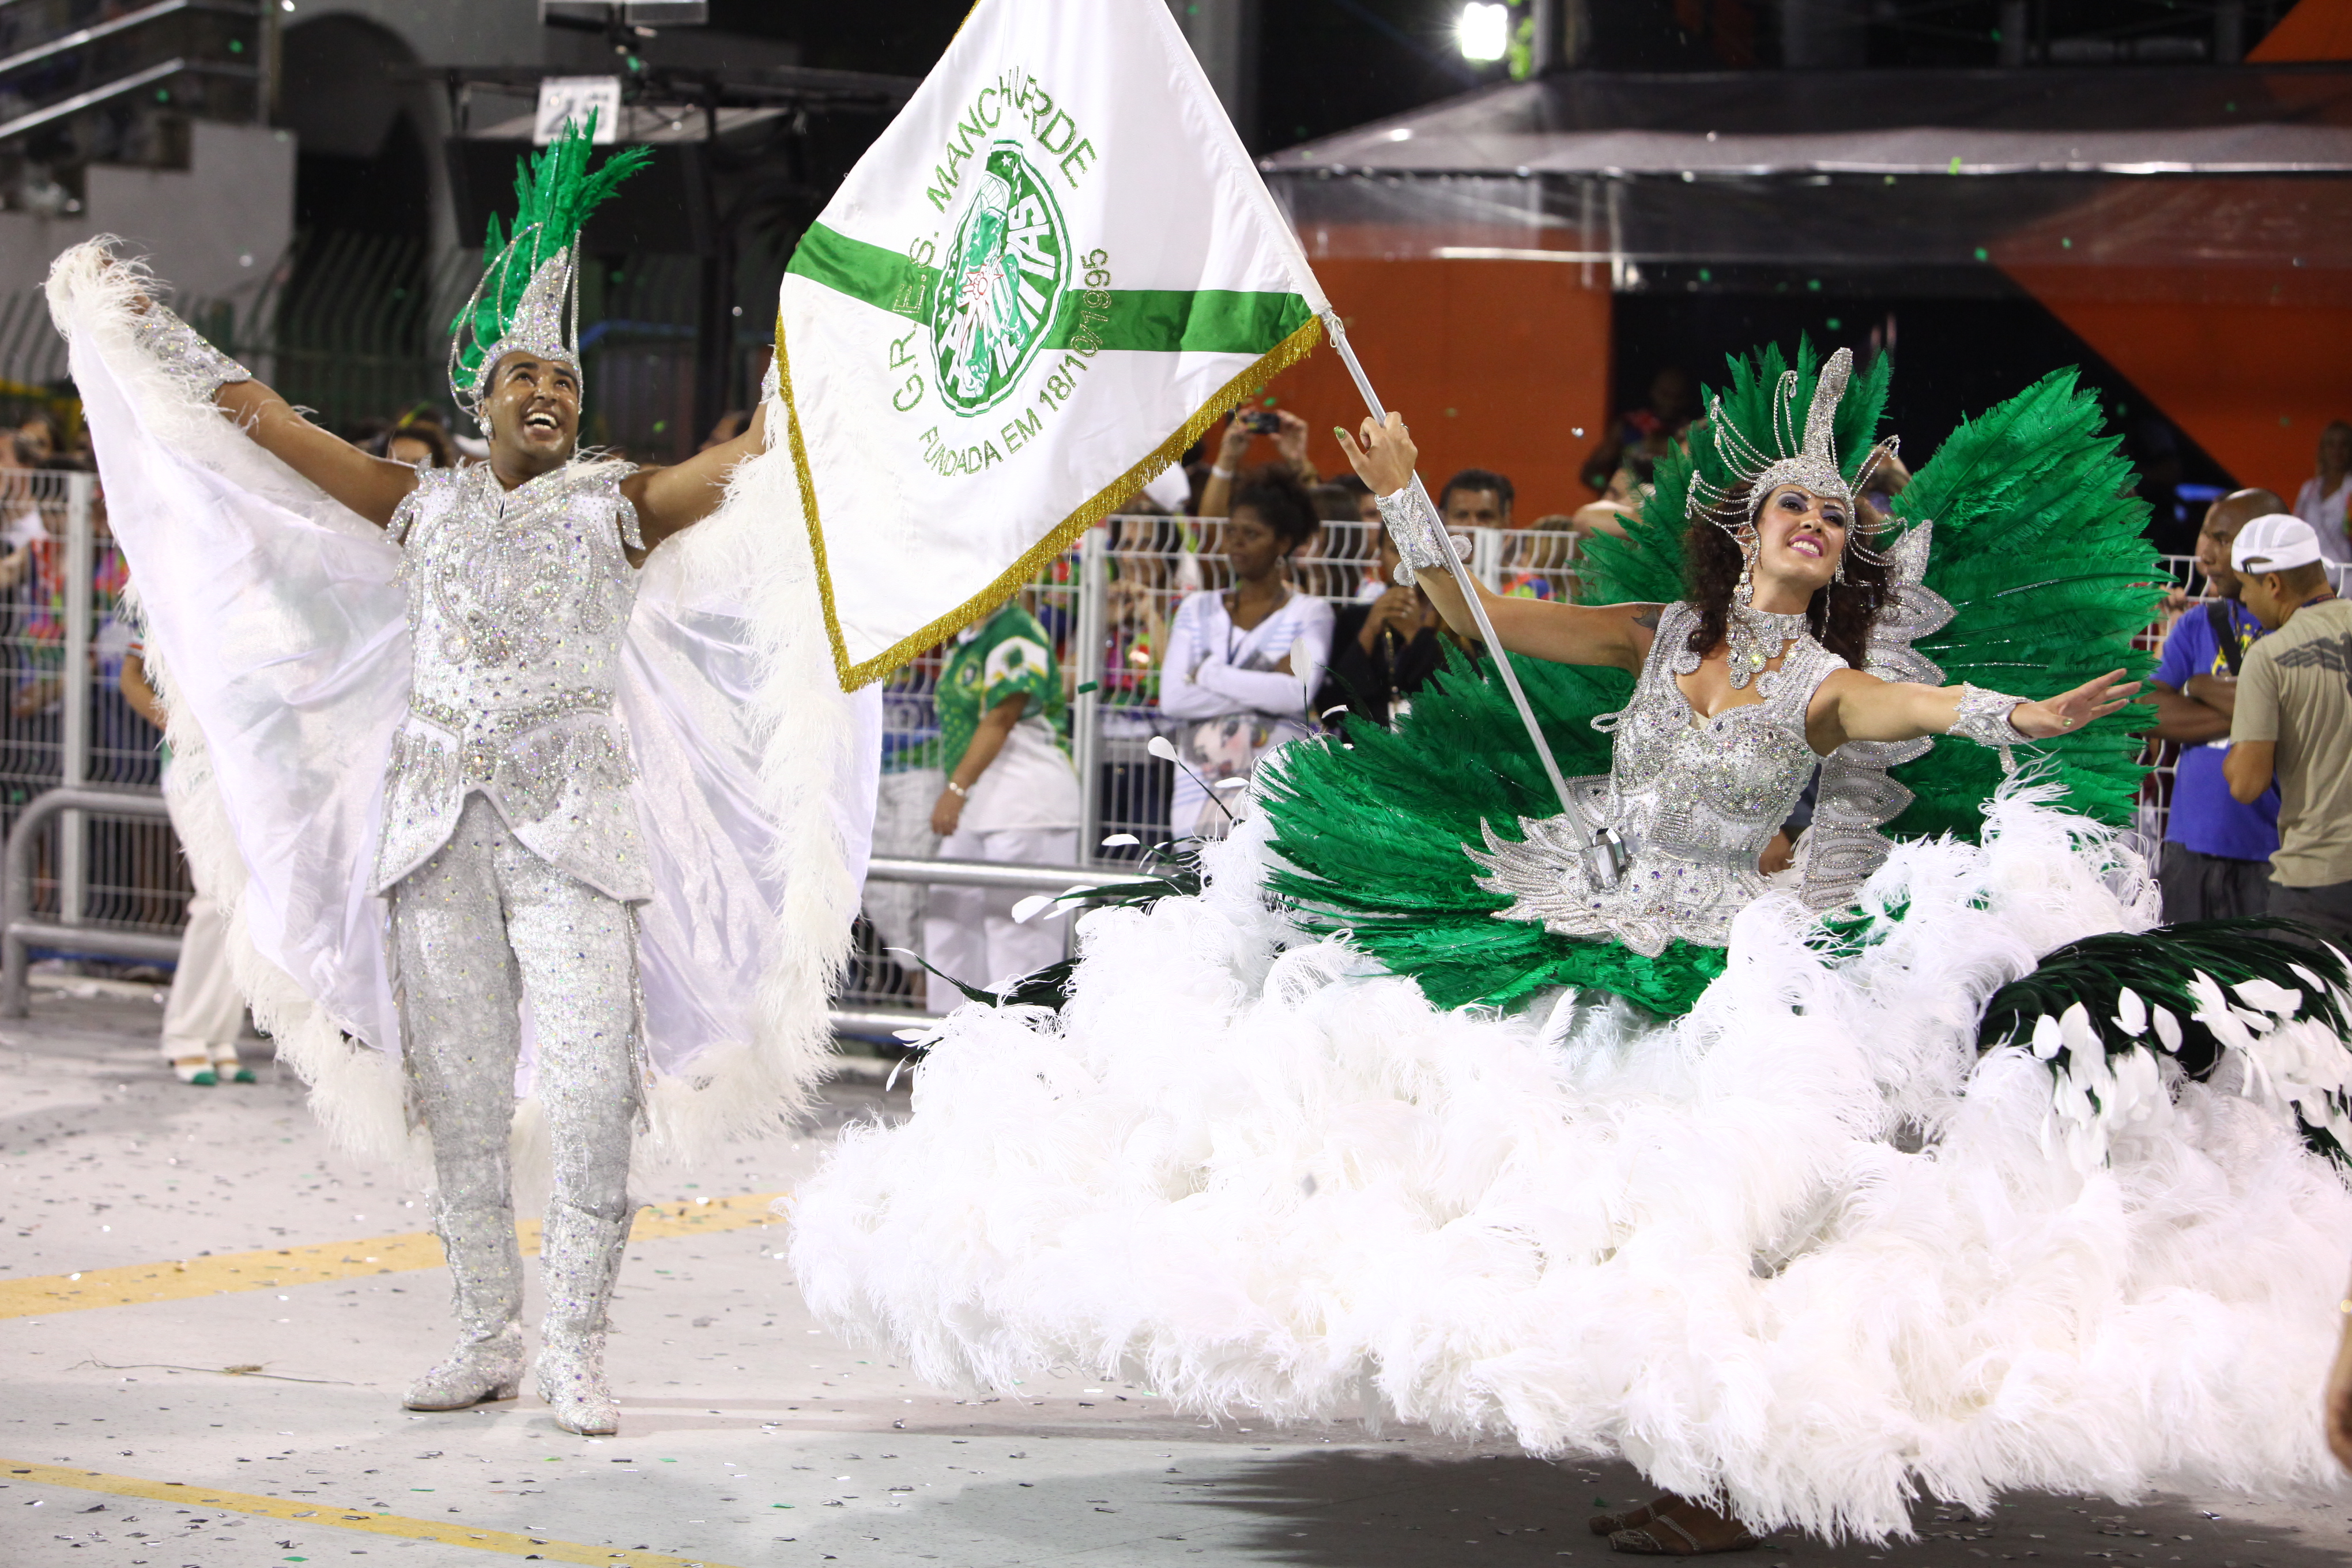 Viagens: Conheça o samba-enredo da Mancha Verde para 2013